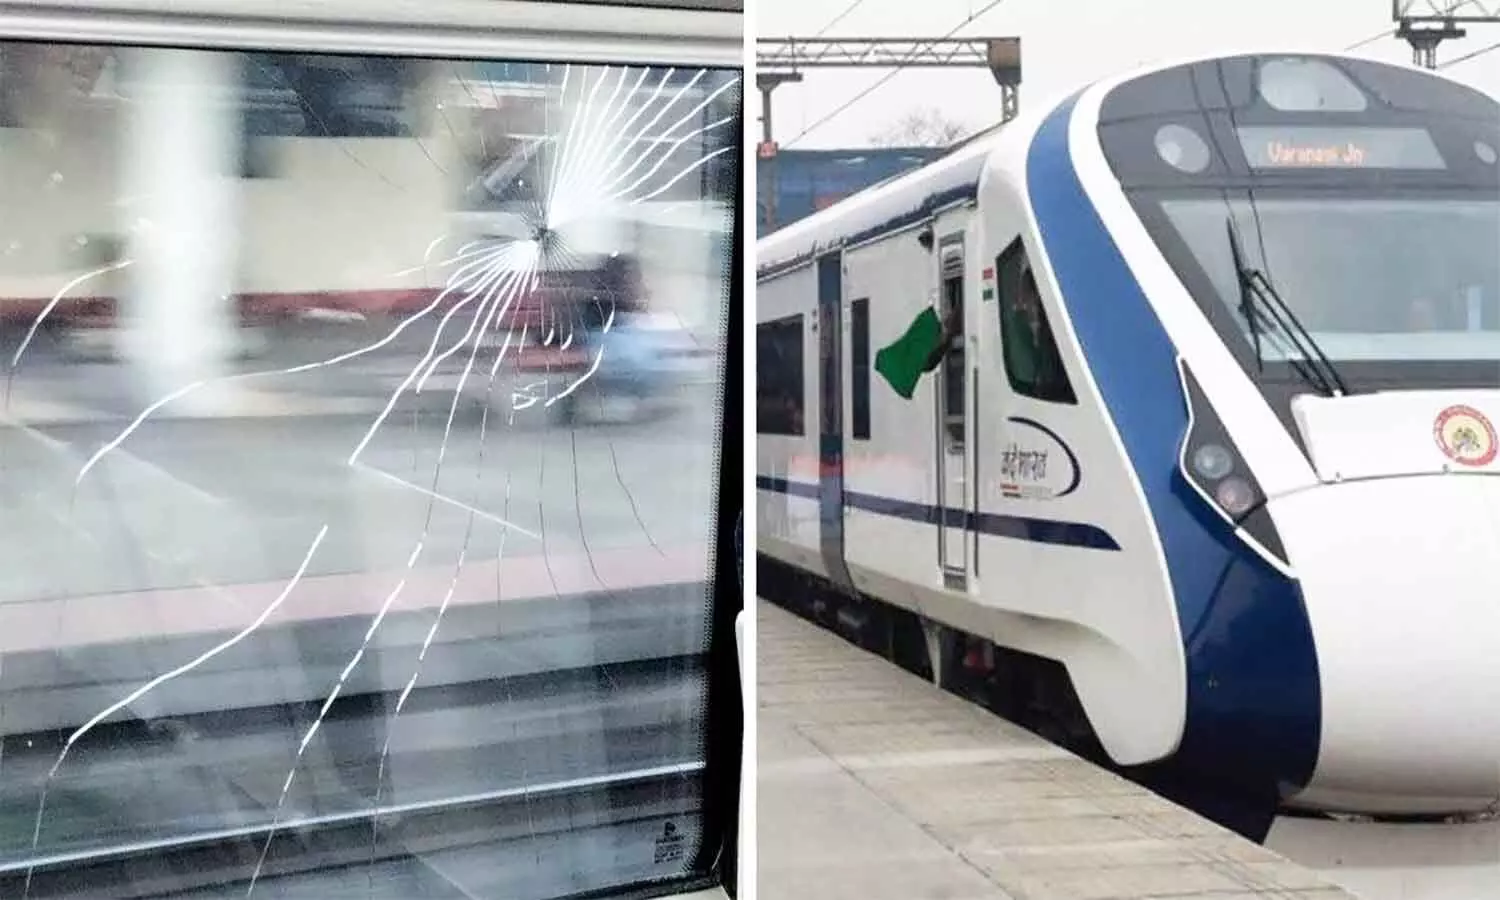 MP Vande Bharat Express Train: एमपी की वंदे भारत एक्सप्रेस में हर दूसरे दिन हो रहा पथराव, 67 दिन में 30 विंडो के कांच तोड़ डाले